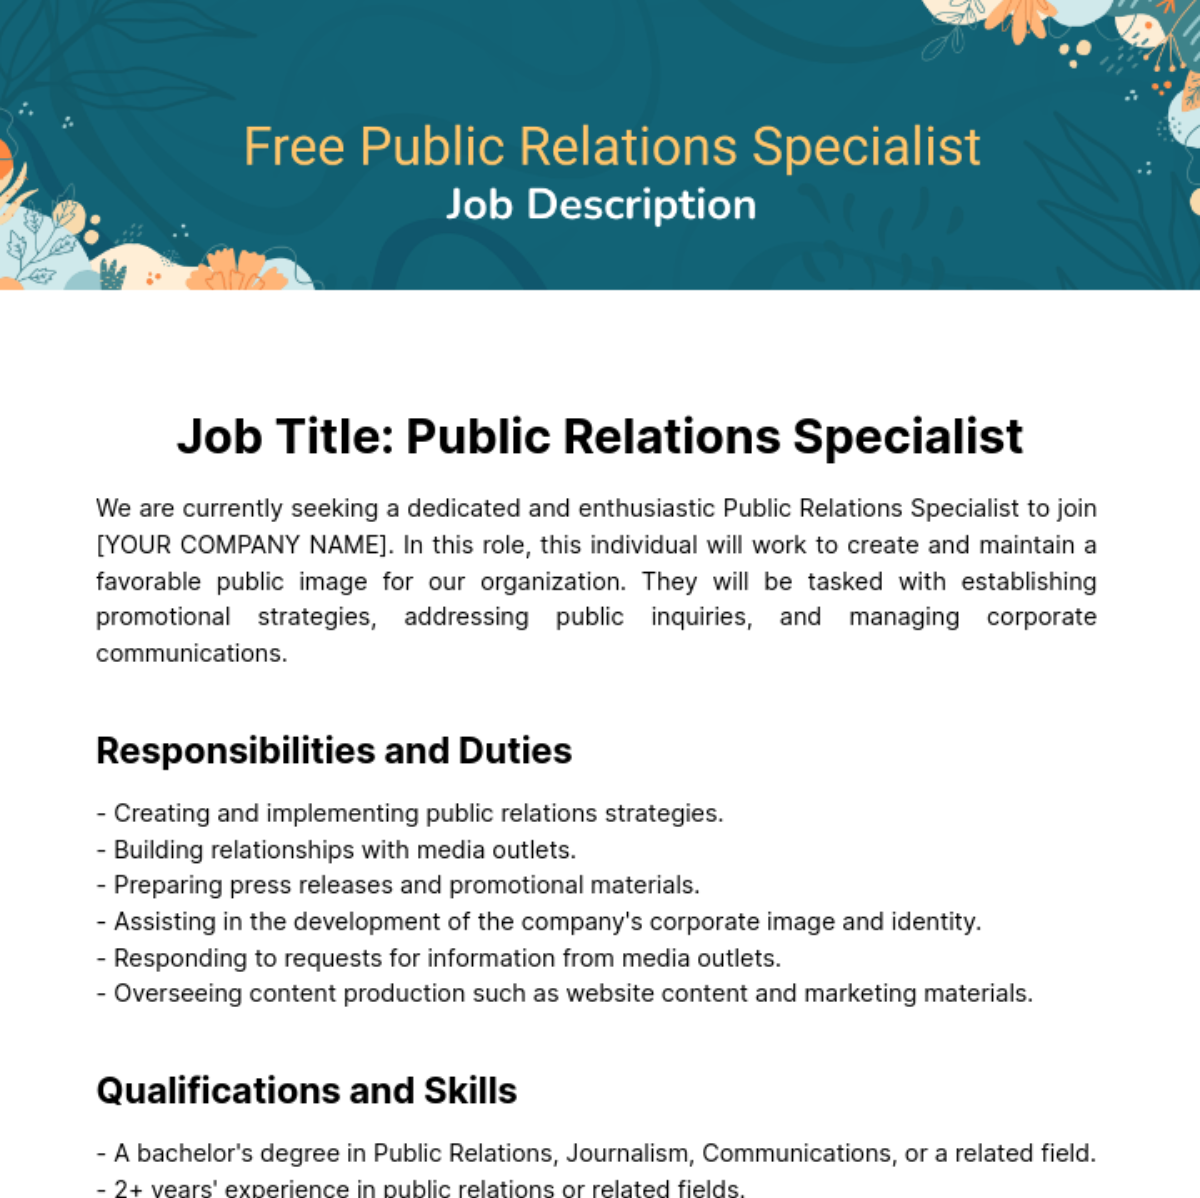 Public Relations (PR) Specialist Job Description Template